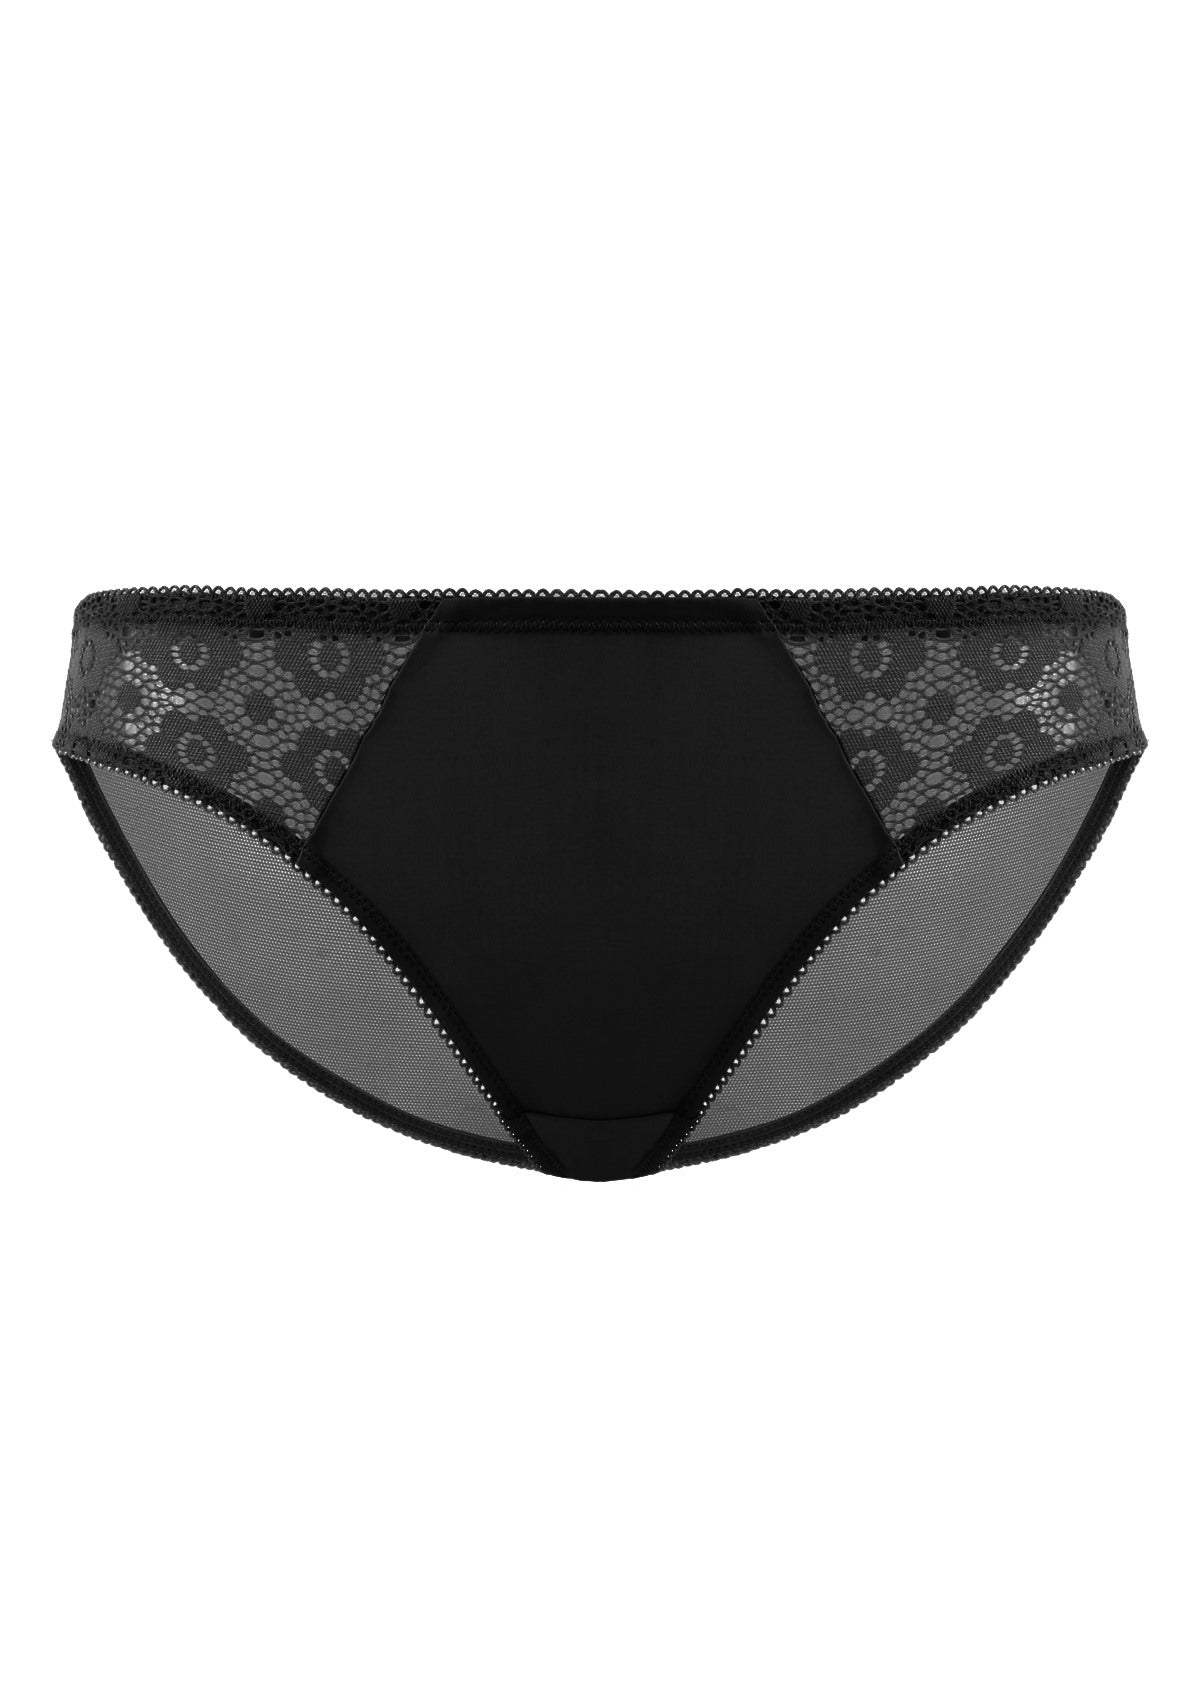 HSIA Serena Comfortable Trendy Lace Trim Bikini Underwear - XXL / Black